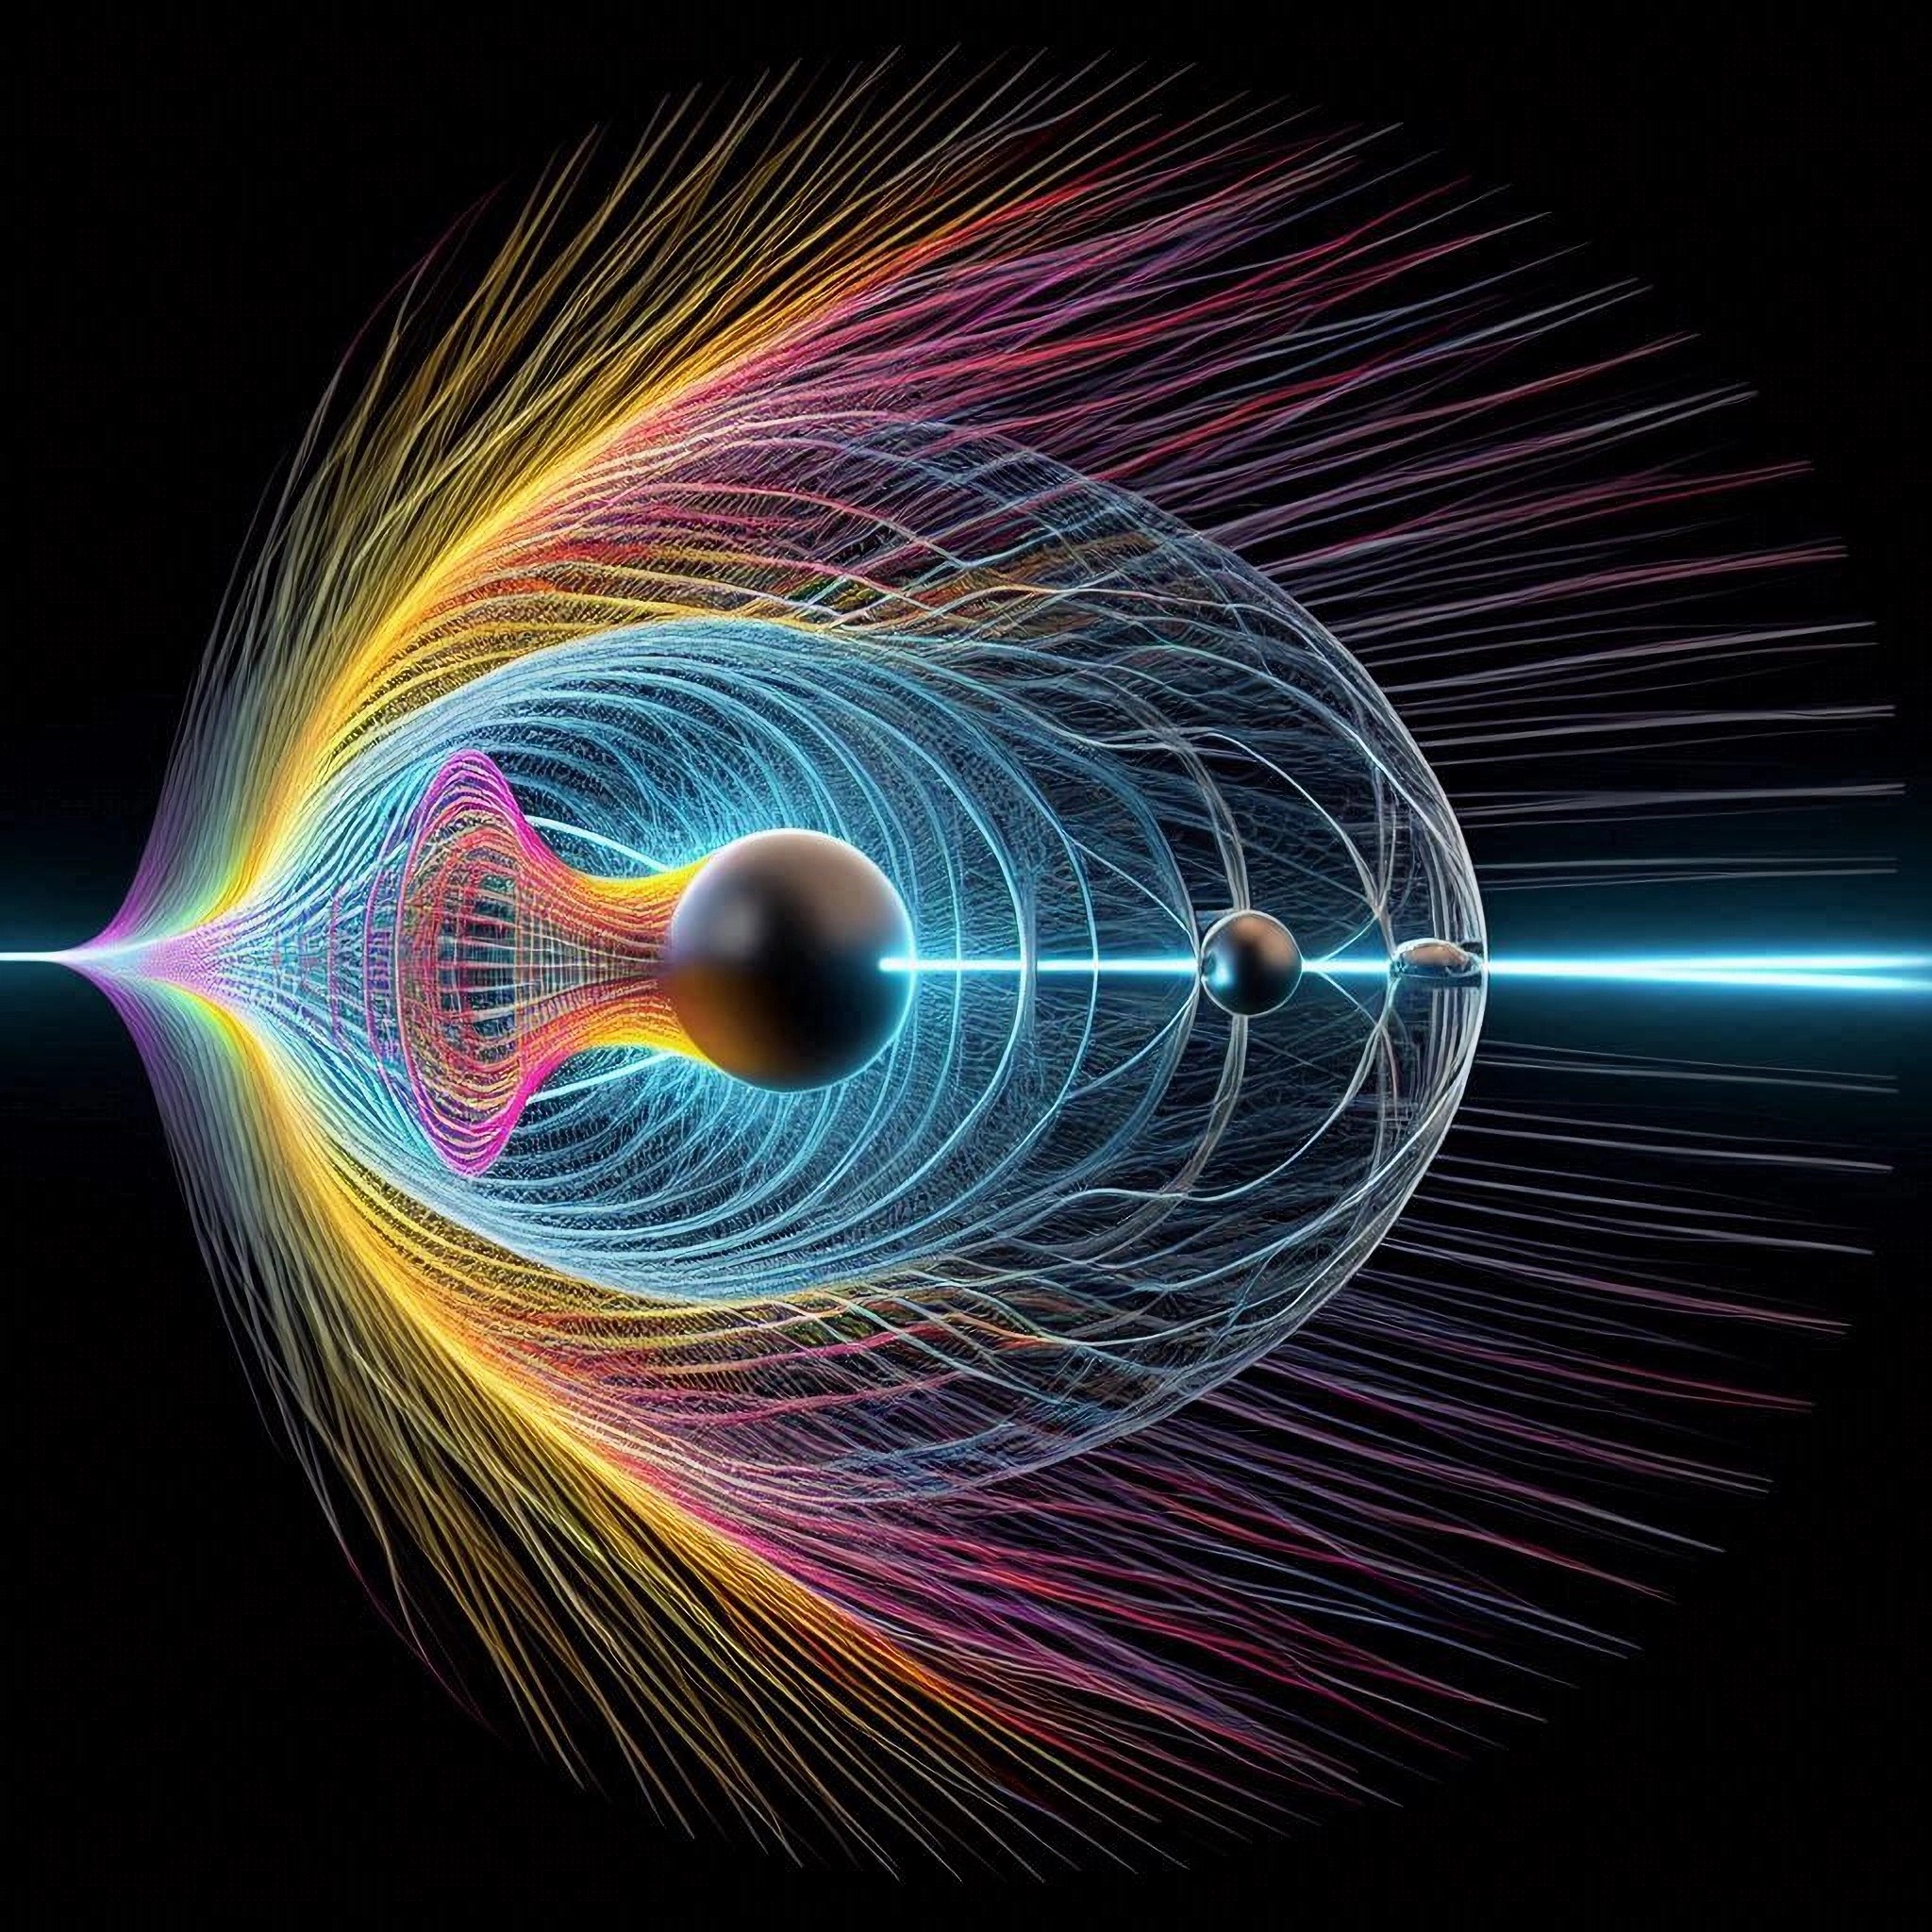 Швидше швидкості світла: тахіон виявився сумісним із теорією відносності Ейнштейна